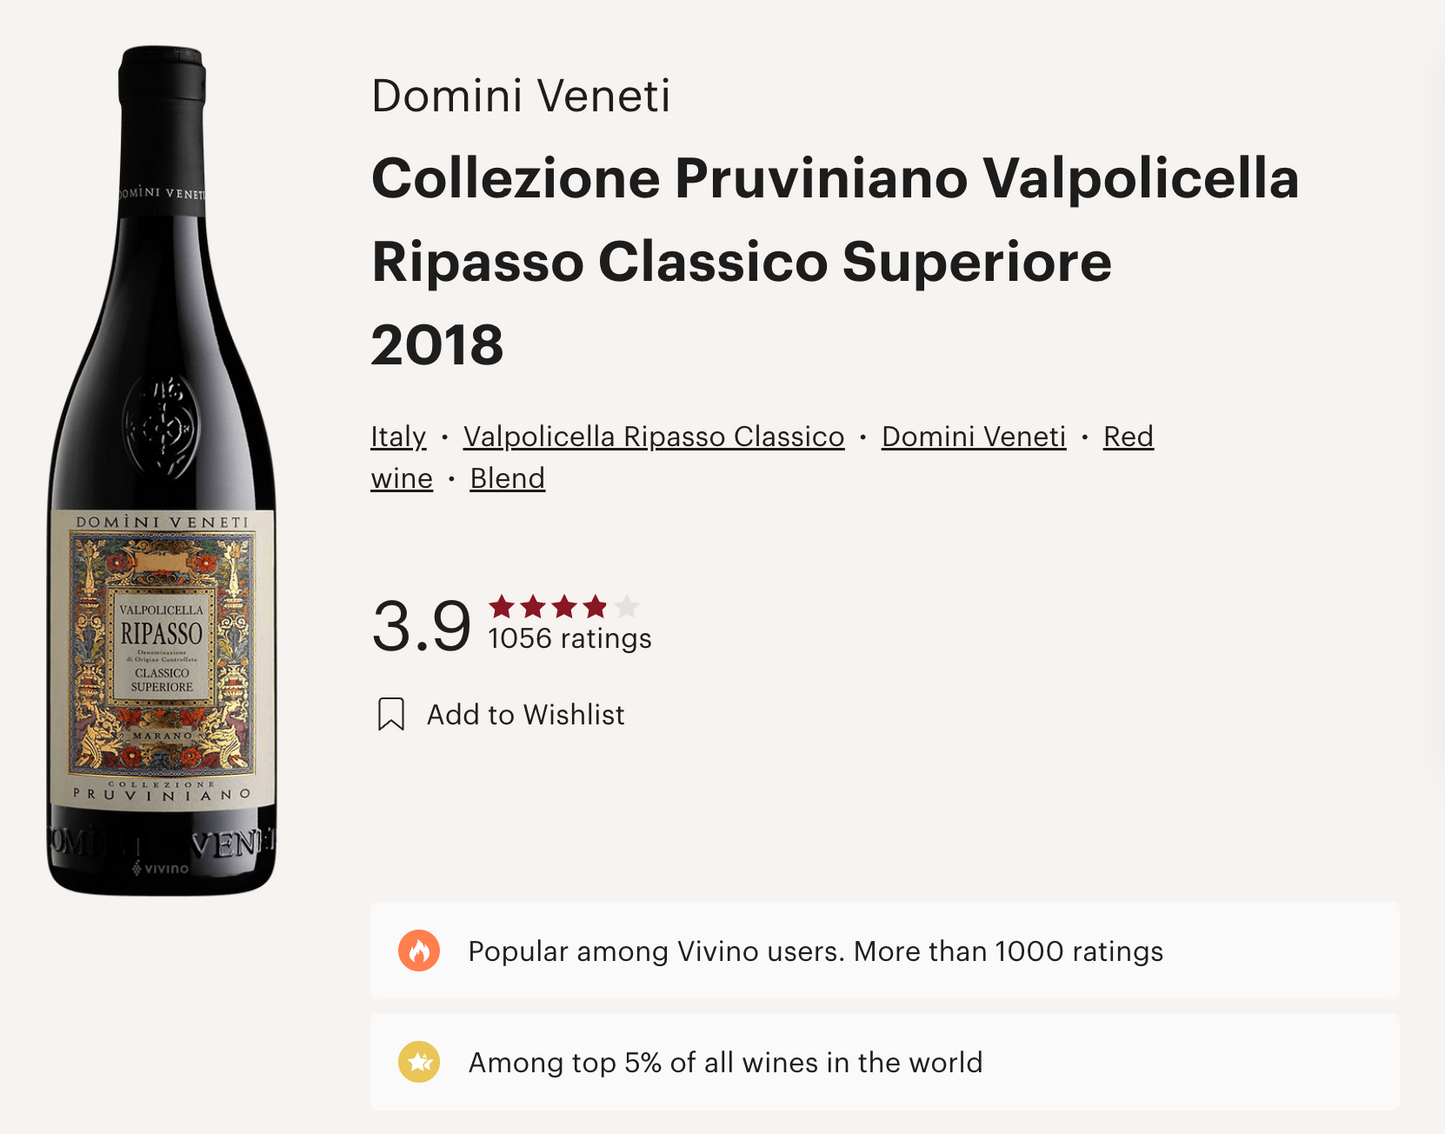 意大利 Domini Veneti Valpolicella Classico Sup. Ripasso Collezione Pruviniano DOC 2018 紅酒